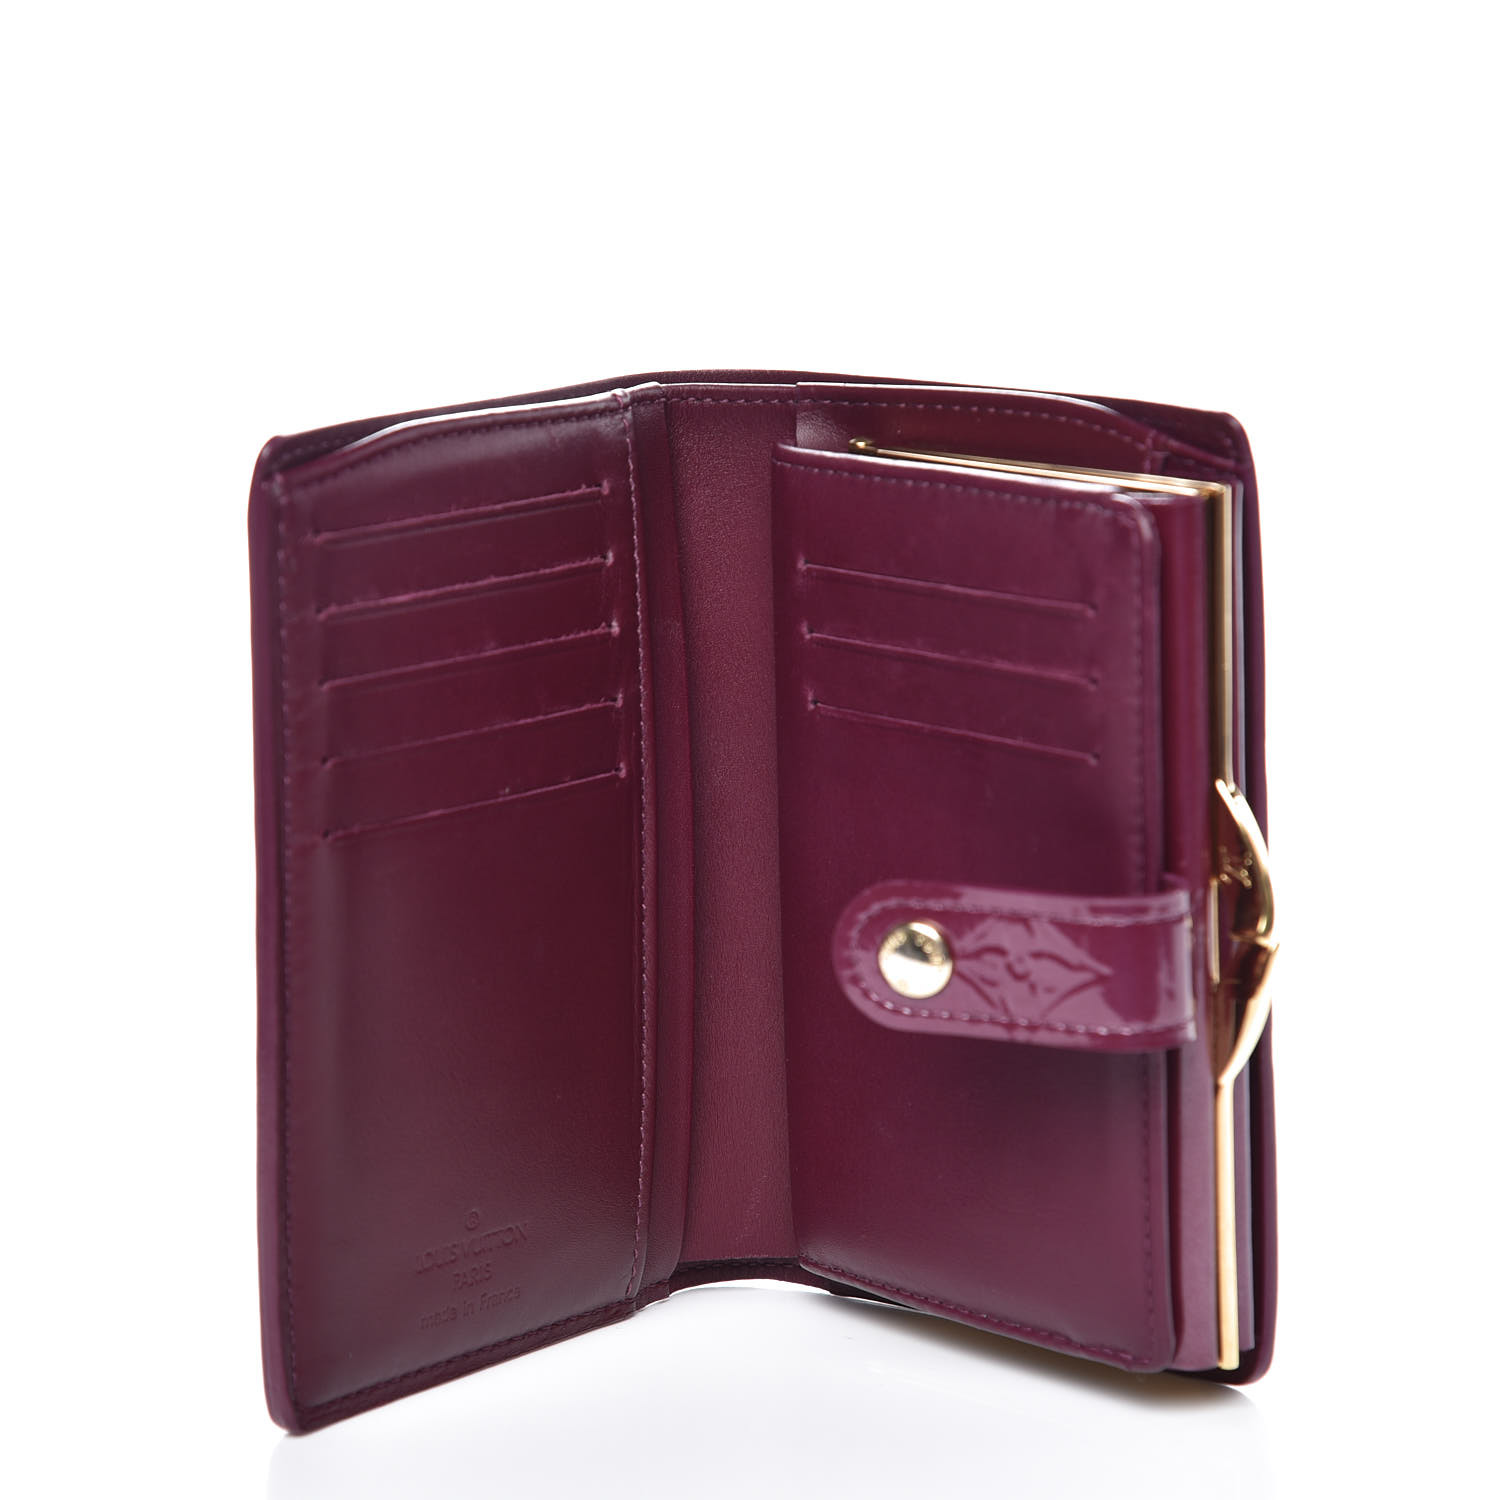 LOUIS VUITTON Vernis French Purse Wallet Violette 378851